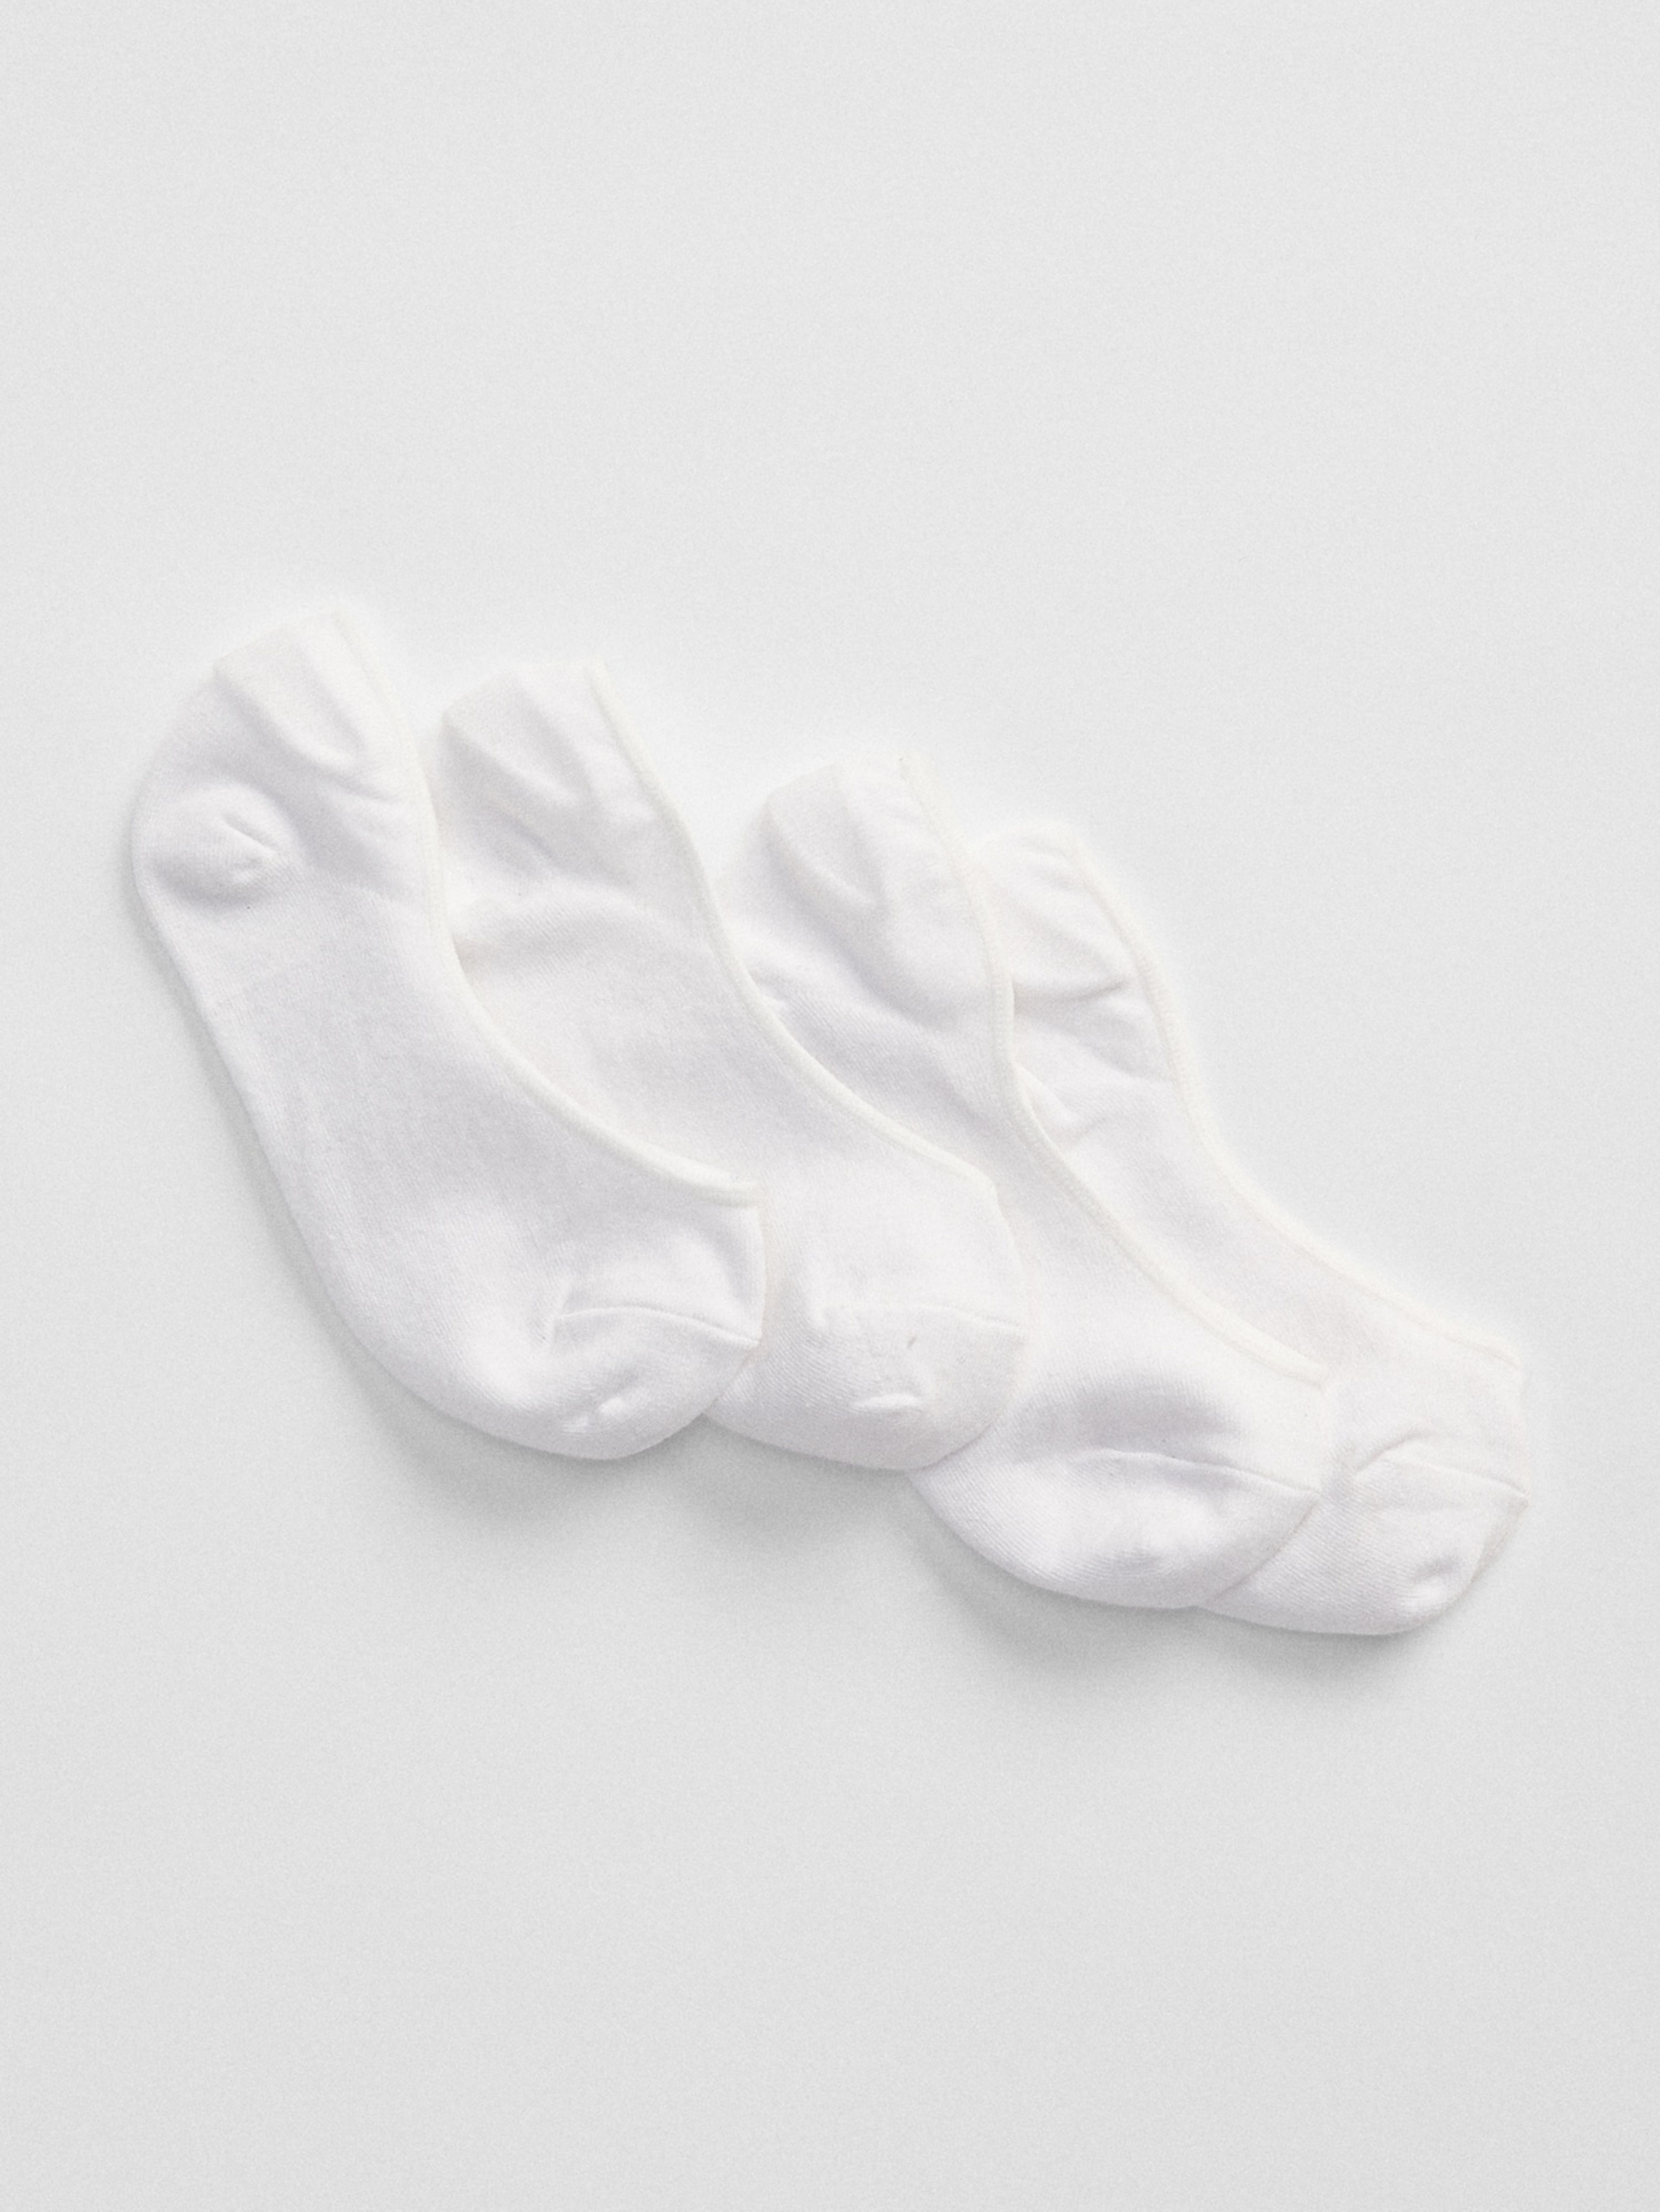 Ponožky no-show, 2 páry